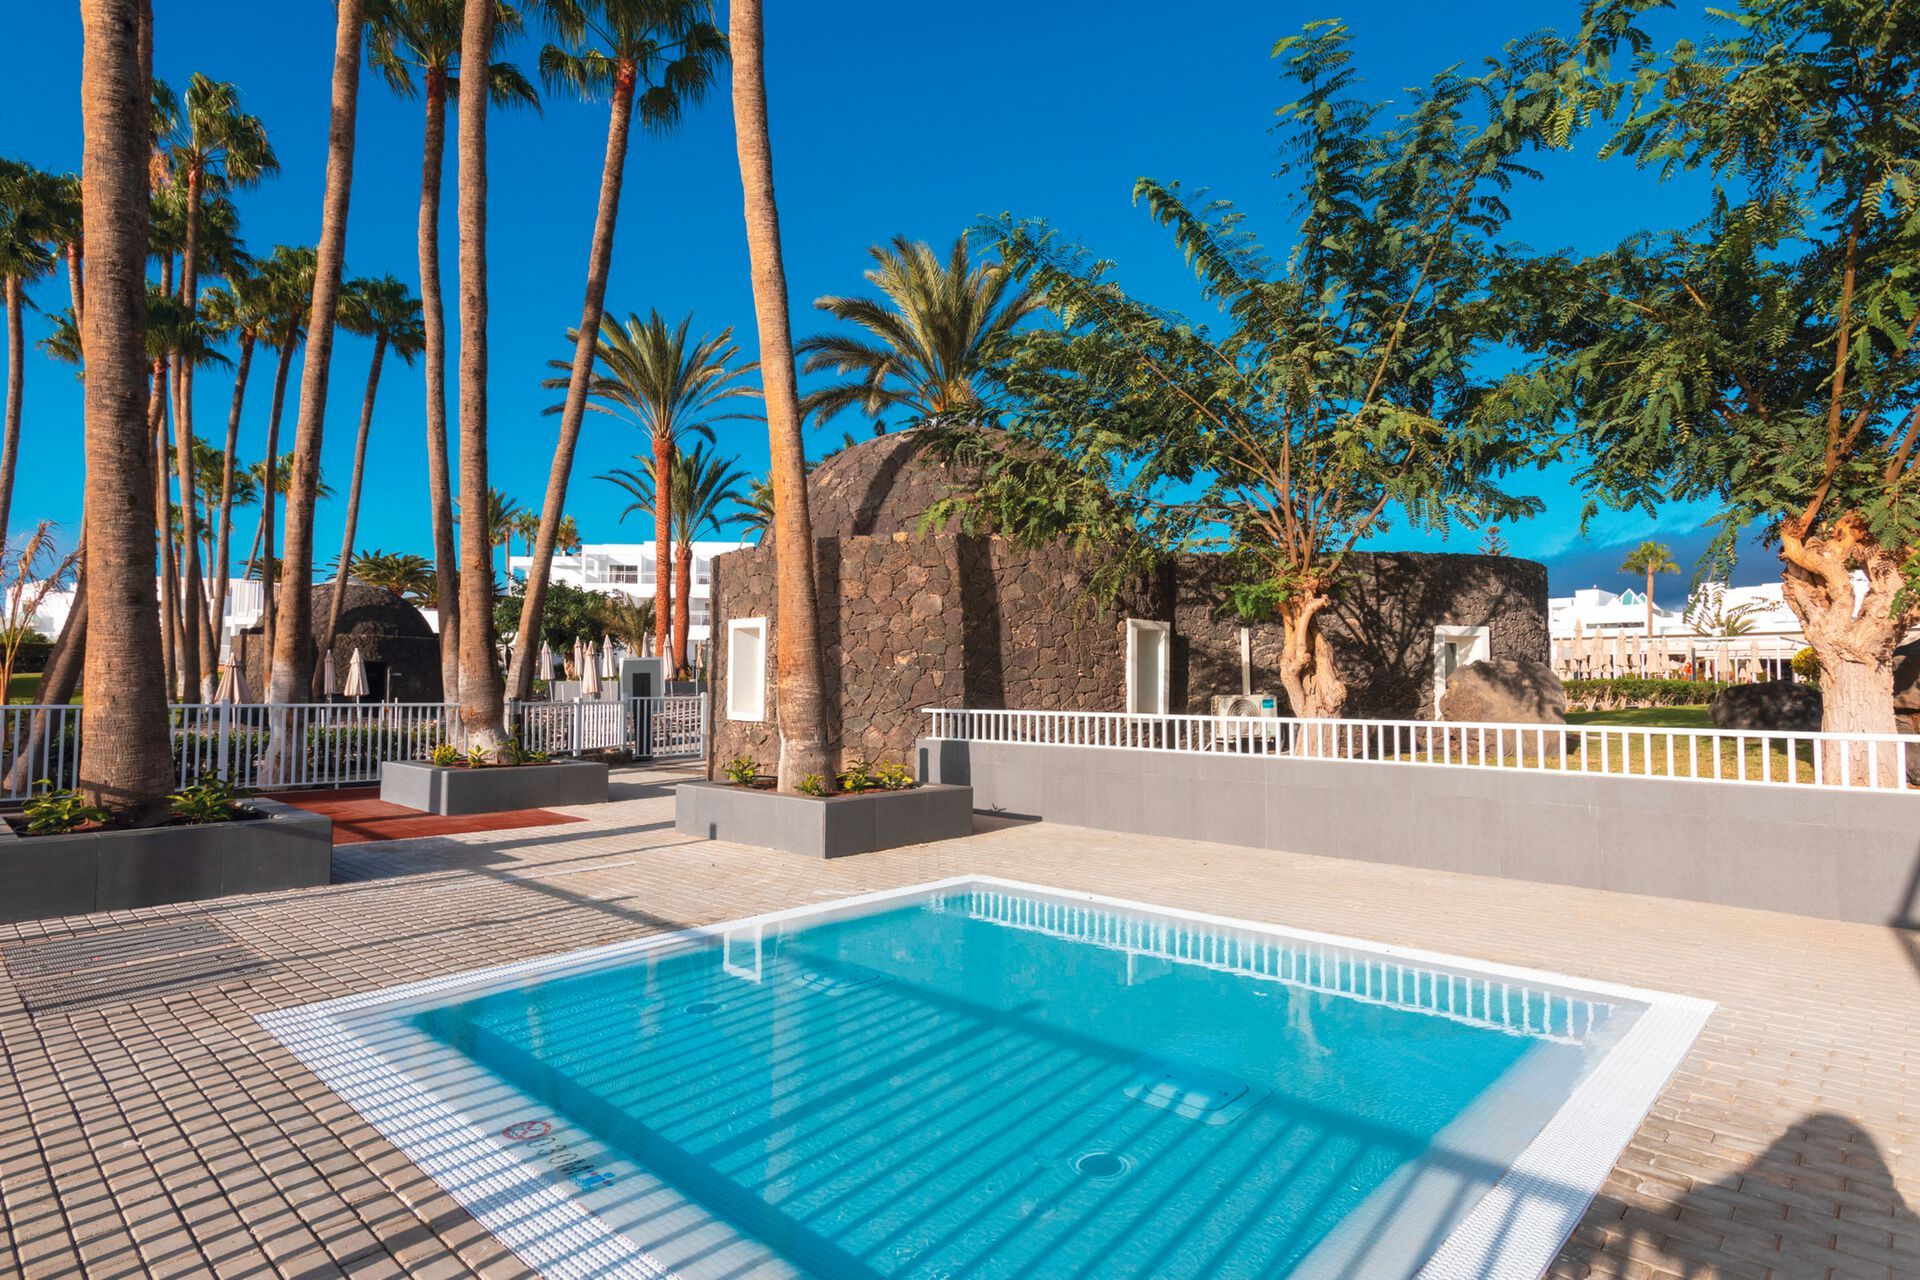 Canaries - Lanzarote - Espagne - Hotel Riu Paraiso Lanzarote 4*